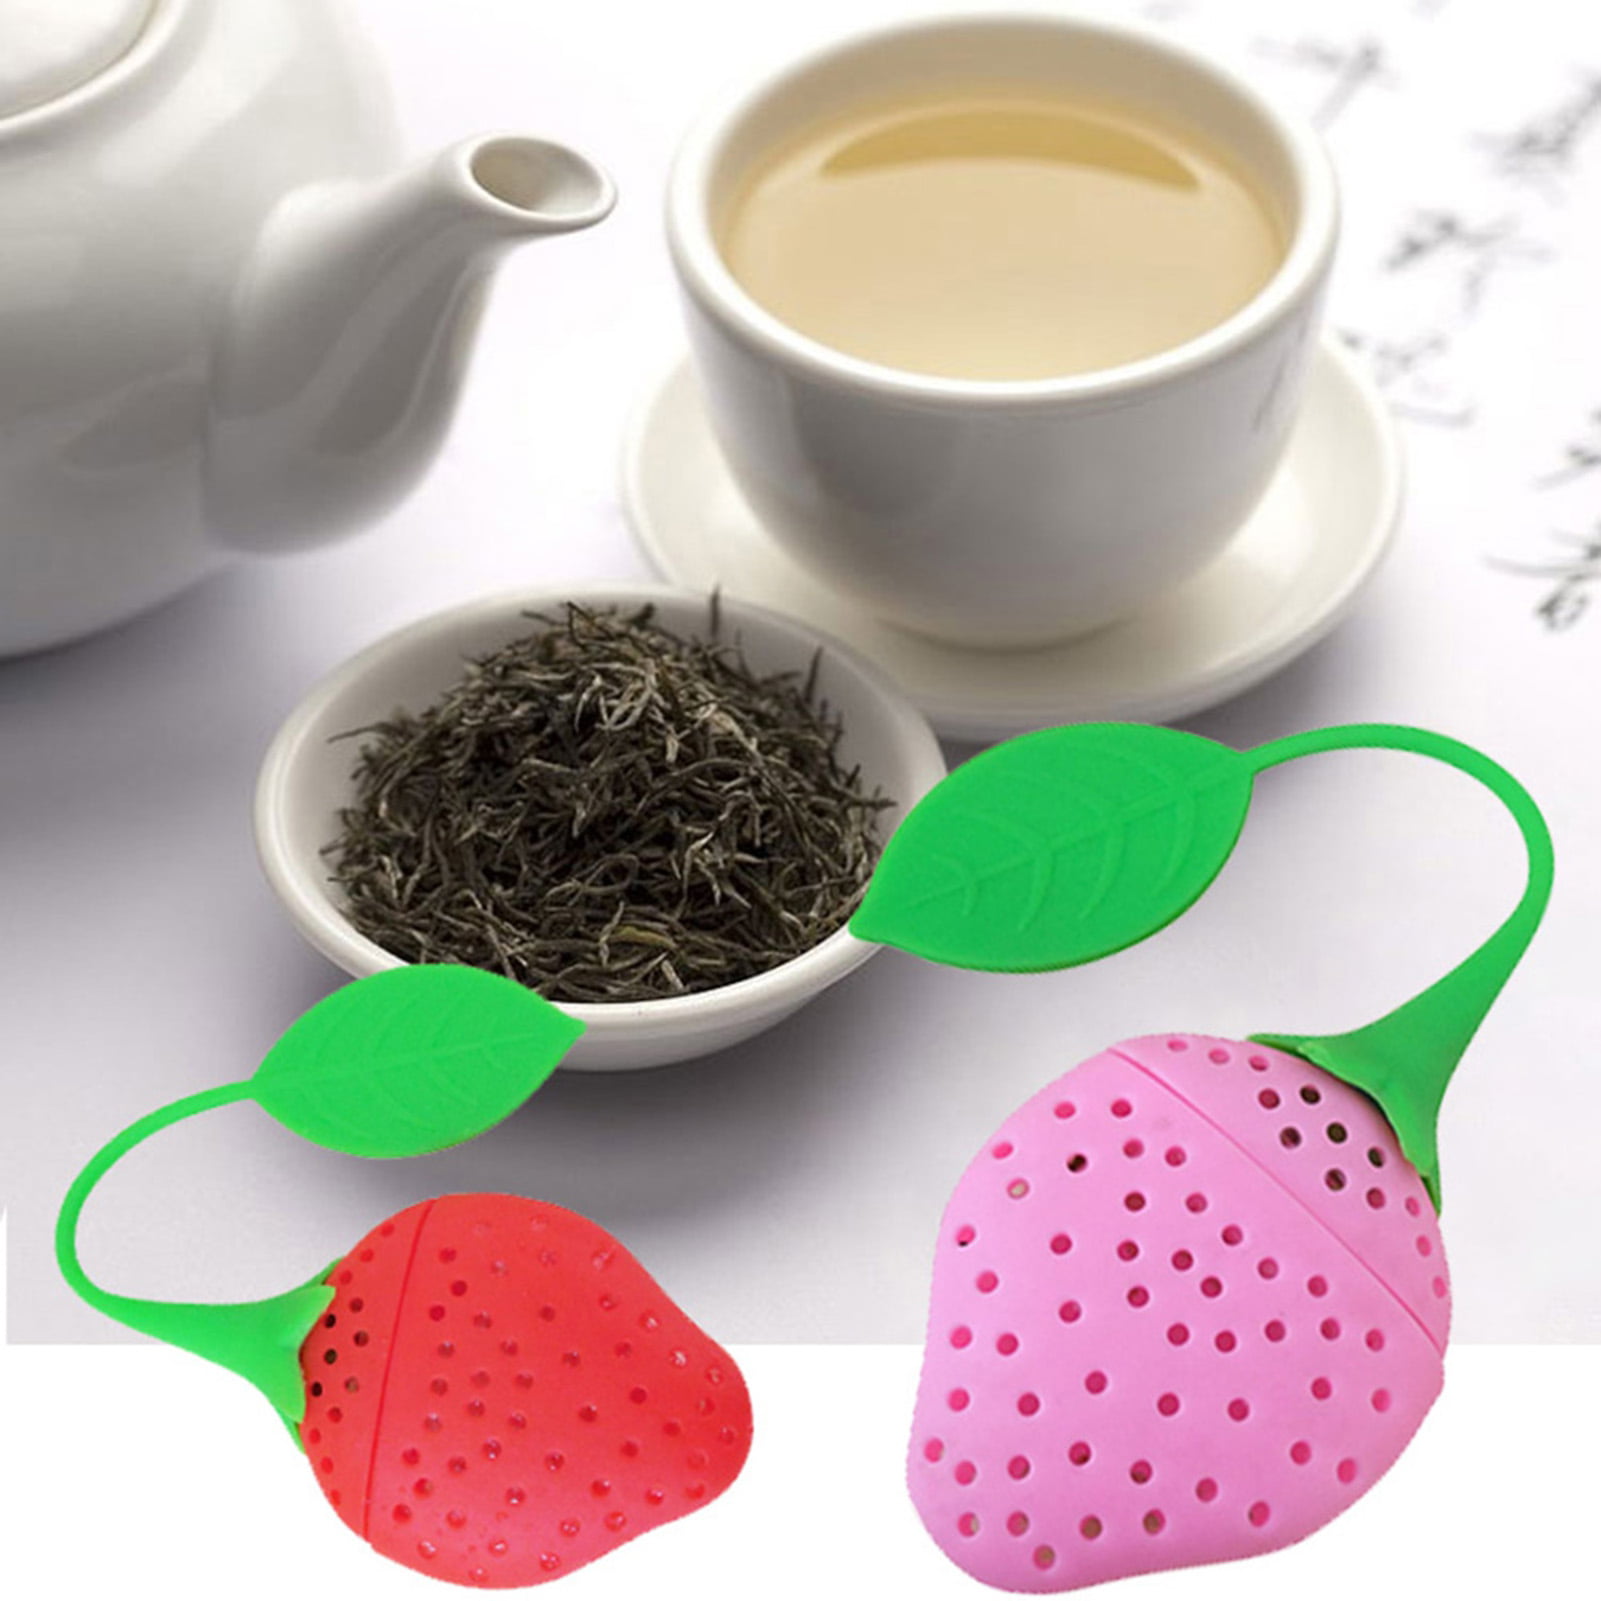 Lemon Shape Silicone Leaf Loose Tea Infuser Filter Strainer Ball 